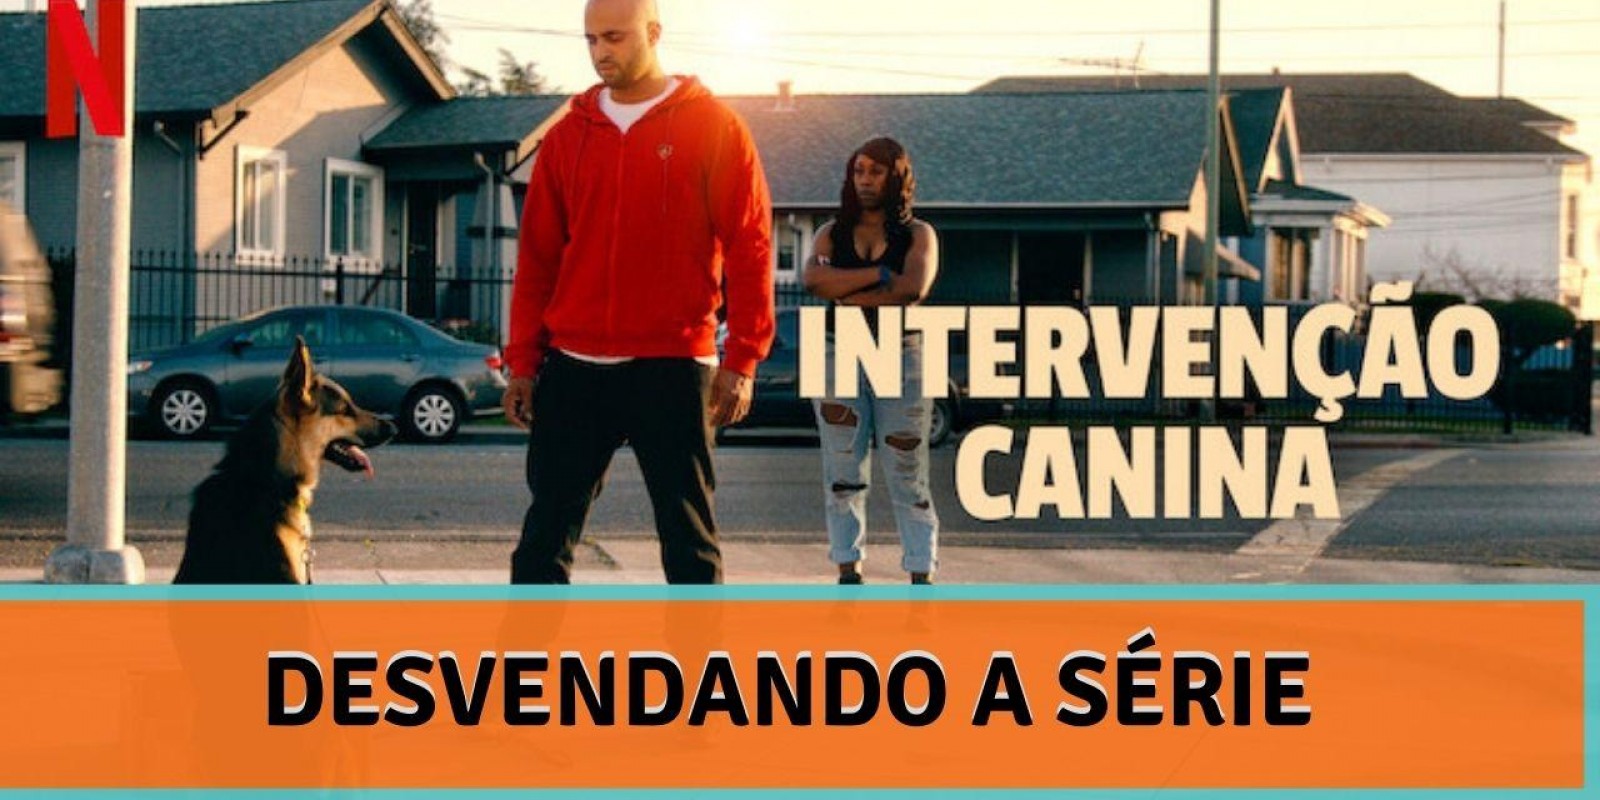 Lambeijos, Carla Ruas - Intervenção Canina: Desvendando a Série 